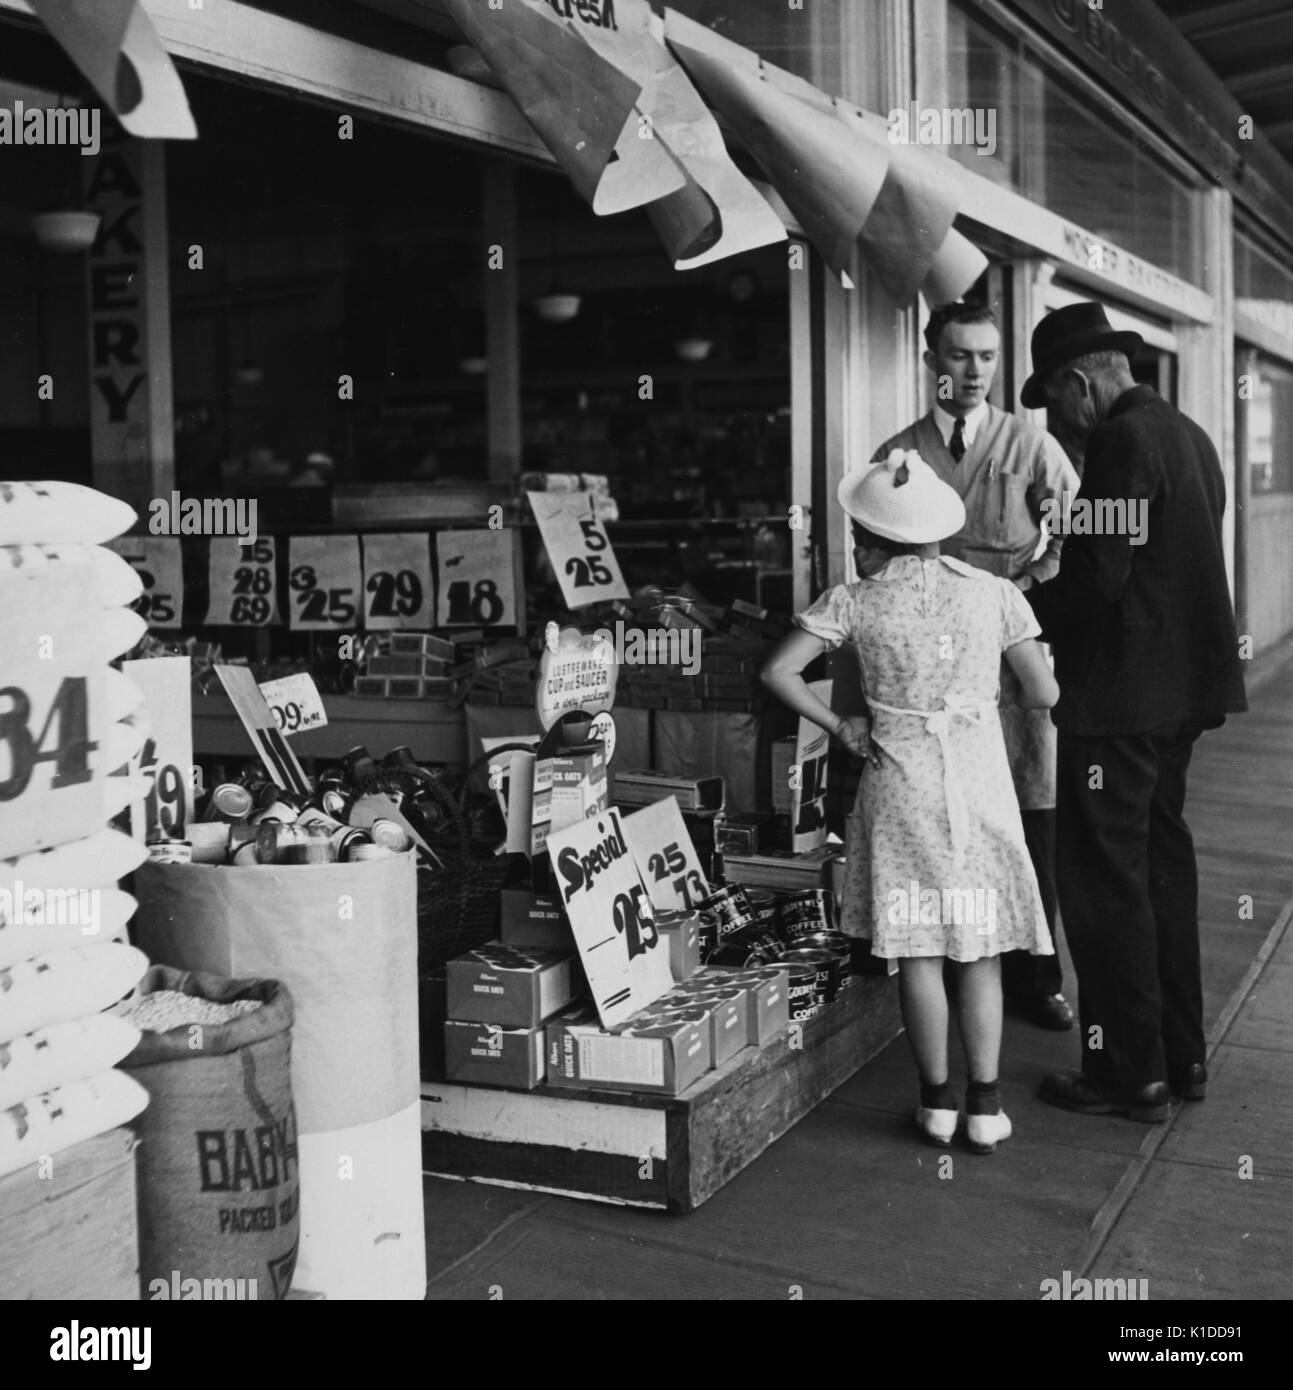 Couple effectuant des achats auprès d'un fournisseur dans une boutique du marché, Portland, Oregon, 1936. De la bibliothèque publique de New York. Banque D'Images